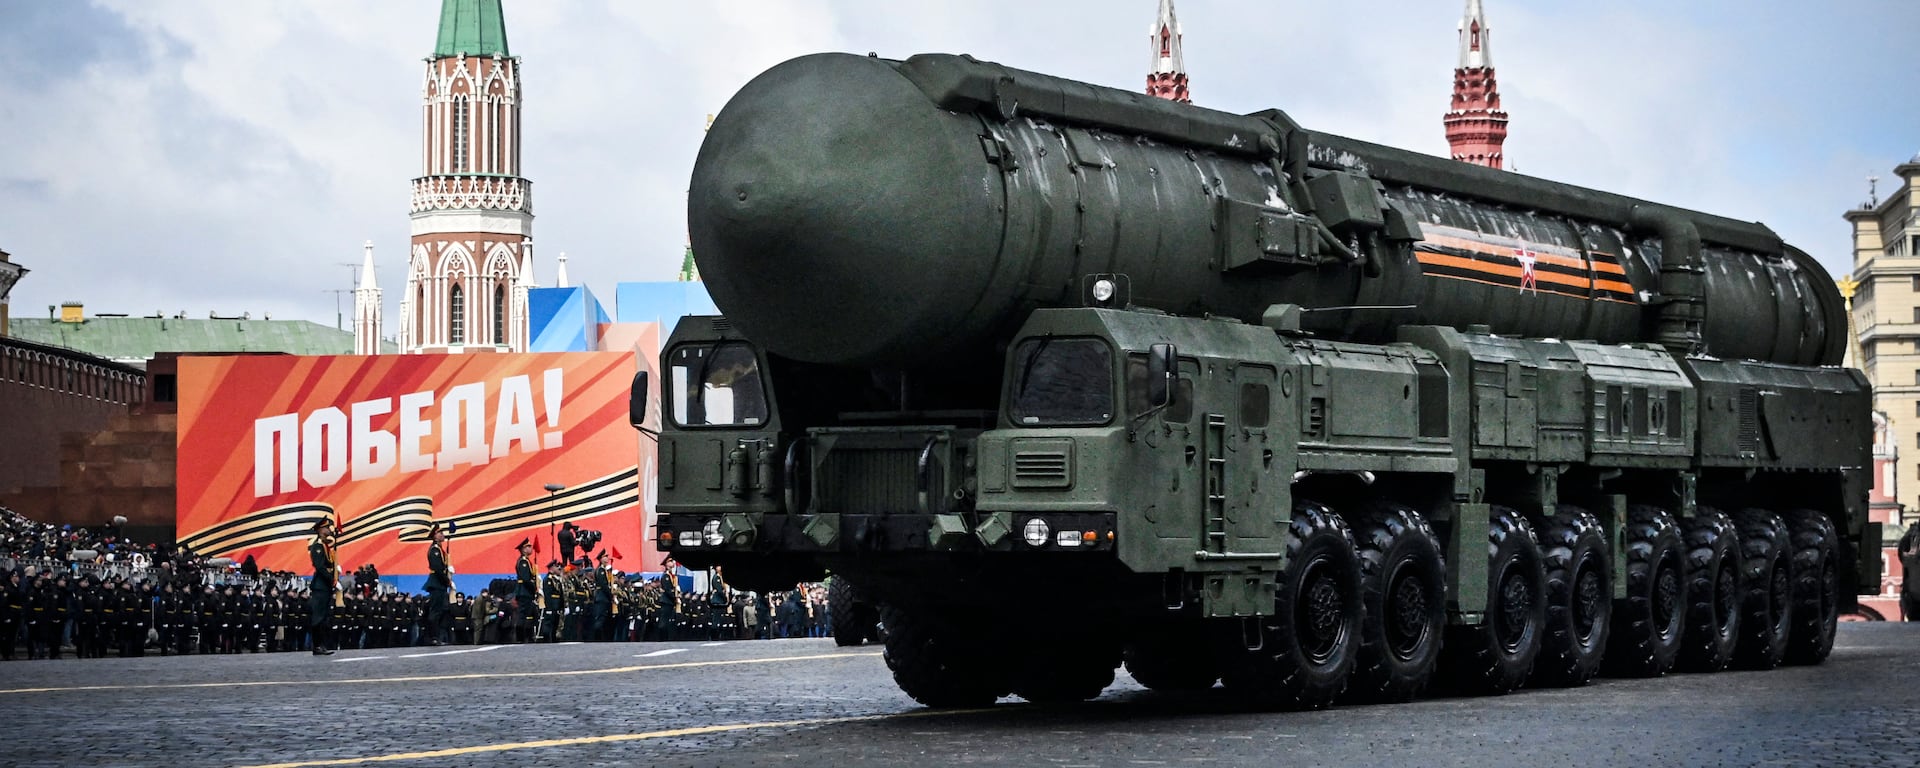 Uso de armas nucleares asusta de nuevo en medio de ejercicios militares: “Es improbable, pero no imposible”